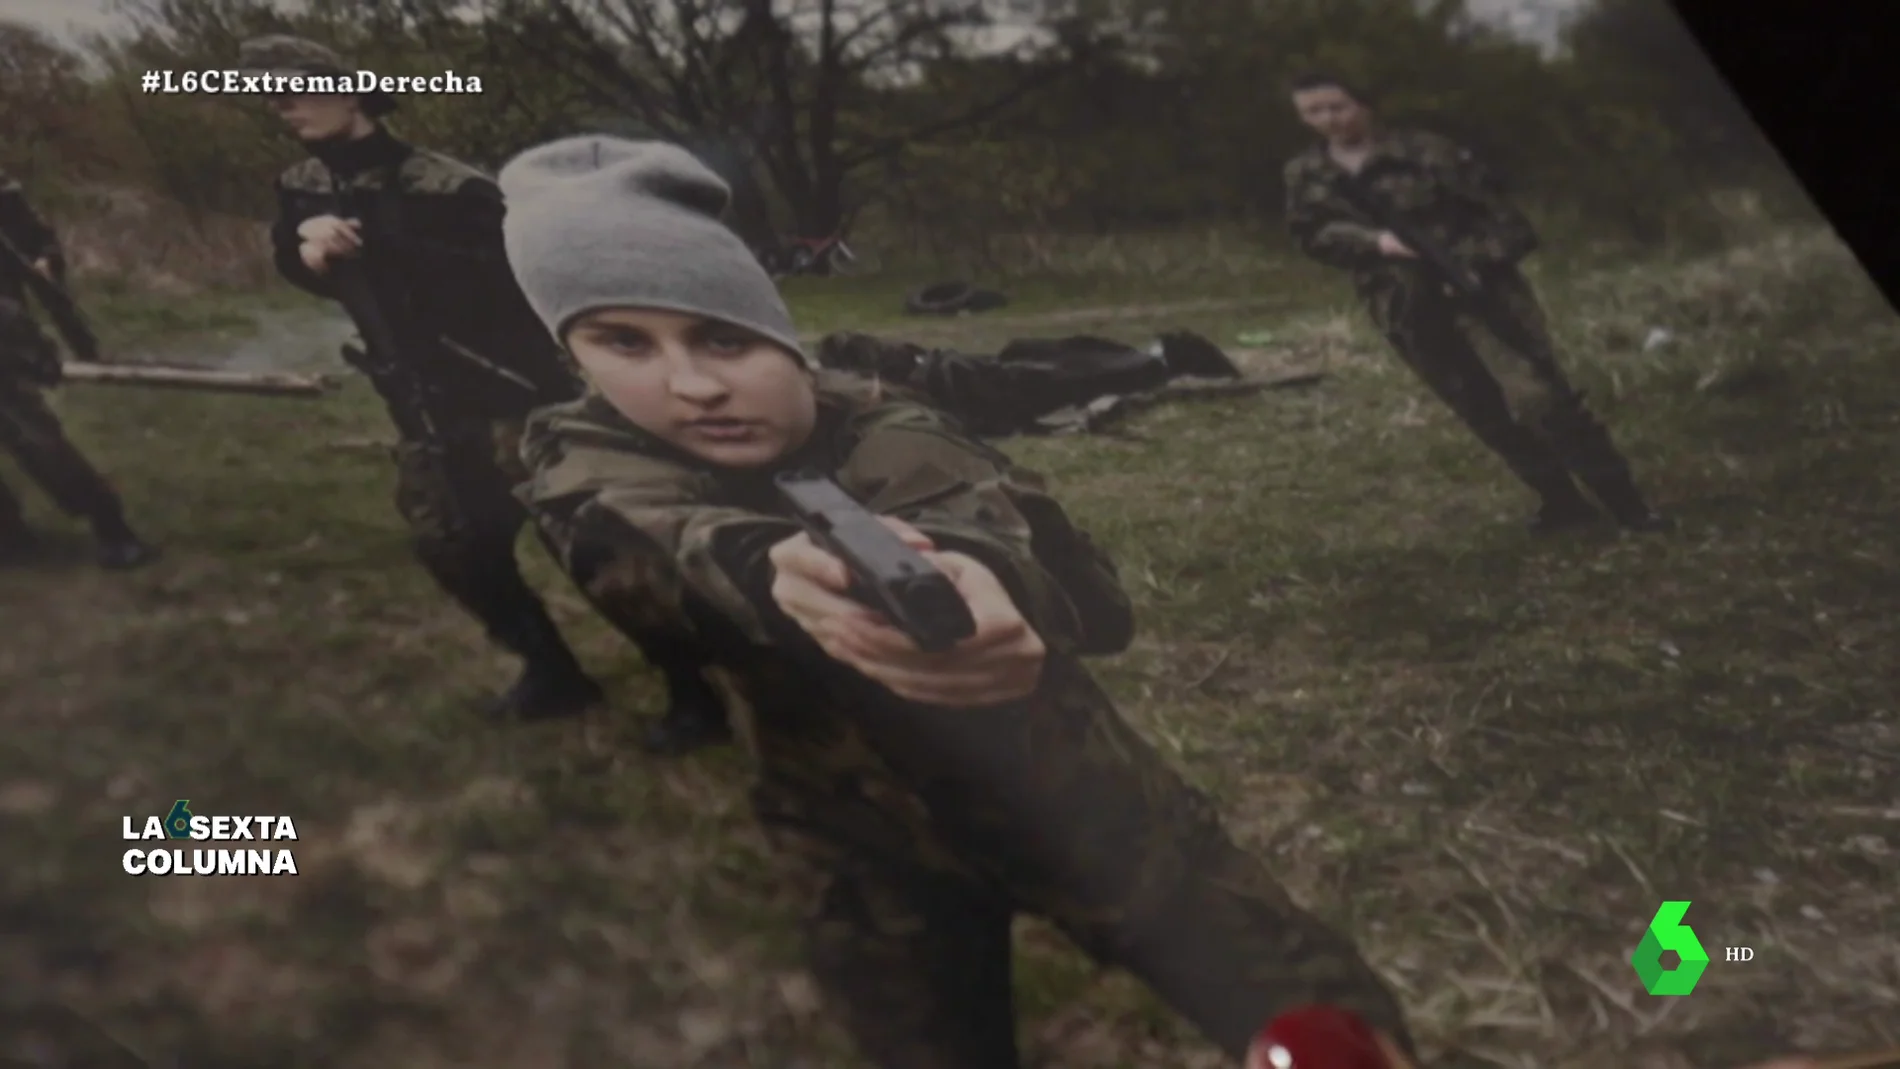 El adoctrinamiento a adolescentes en clases militares en Polonia: "Nadie controla a los paramilitares"